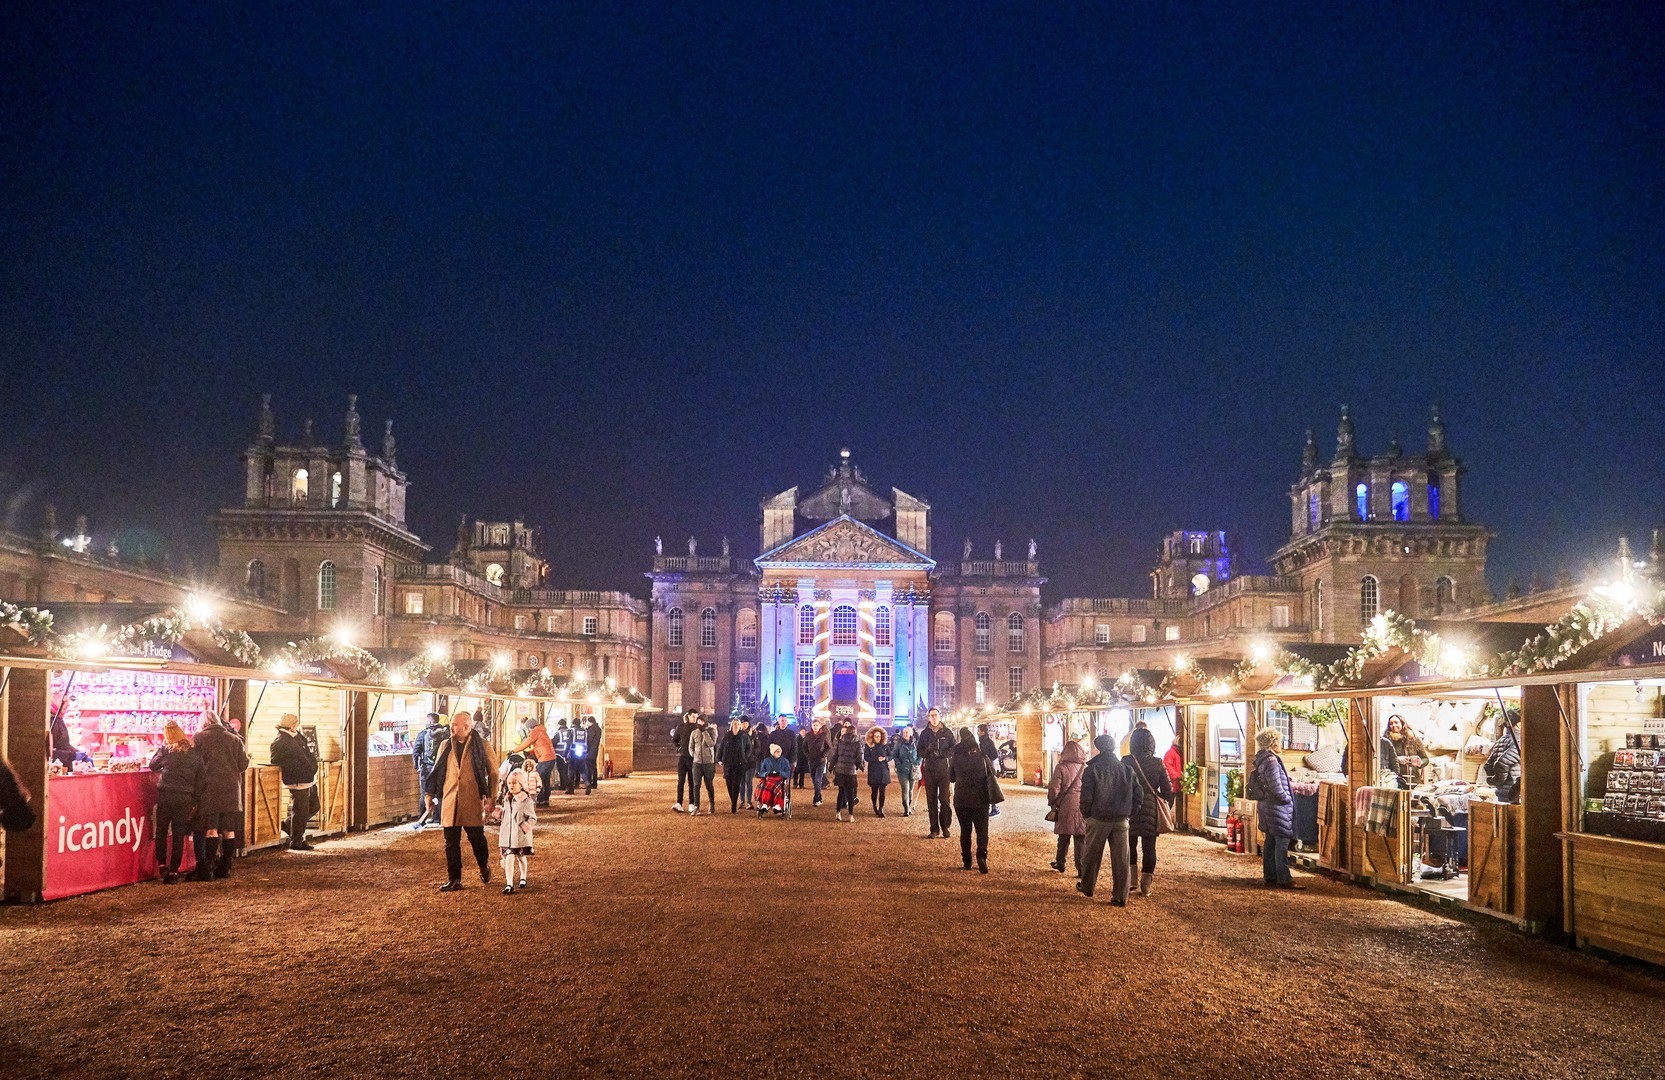 Blenheim Palace Christmas Market, Oxfordshire, England, United Kingdom